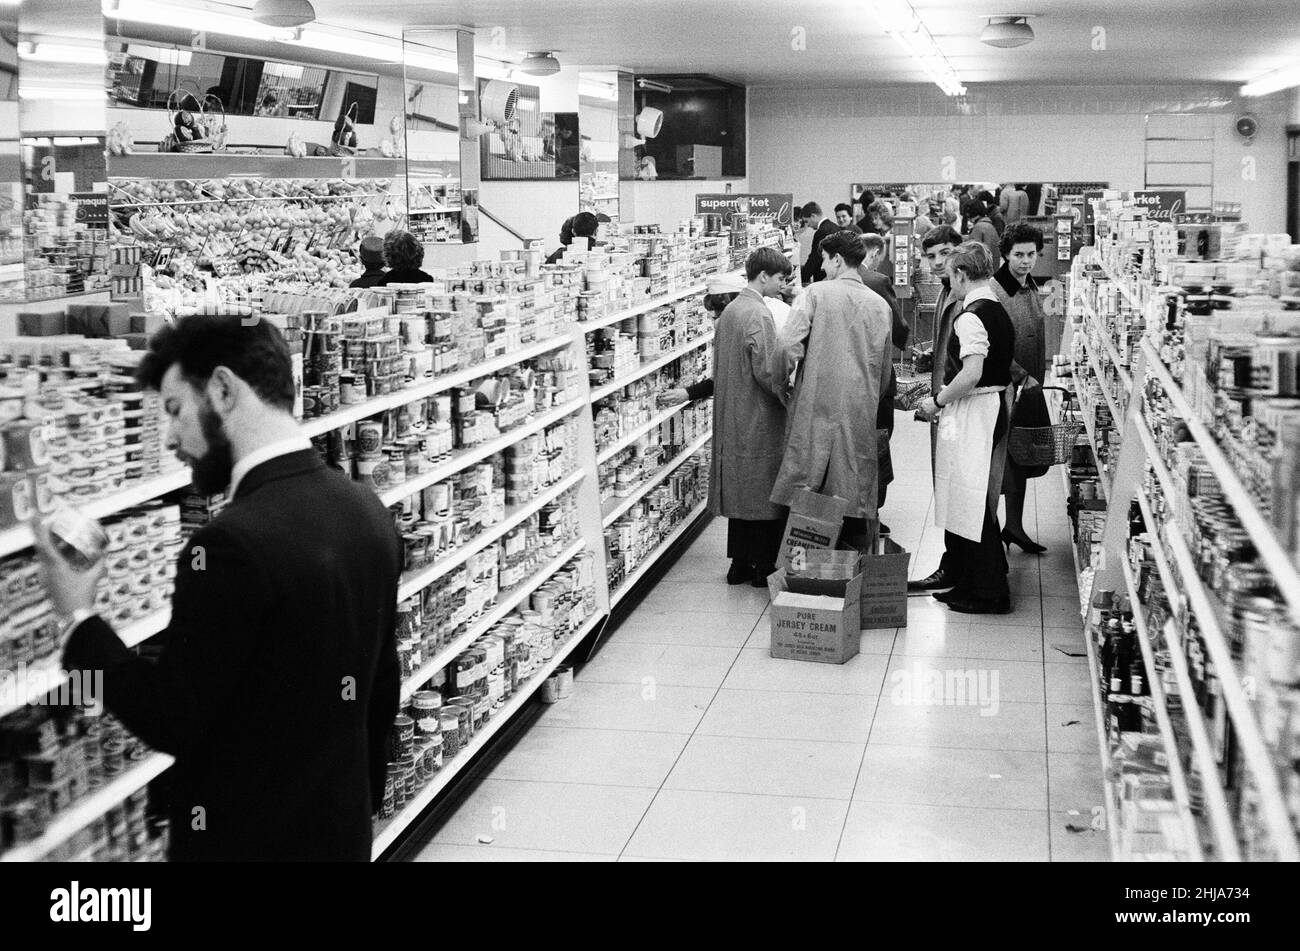 Shoppers, supermarché Fine Fare, Wilton, Londres, 29th octobre 1963.Allée de magasinage, articles sur les tablettes.Assistants d'atelier, étagères empilables. Banque D'Images